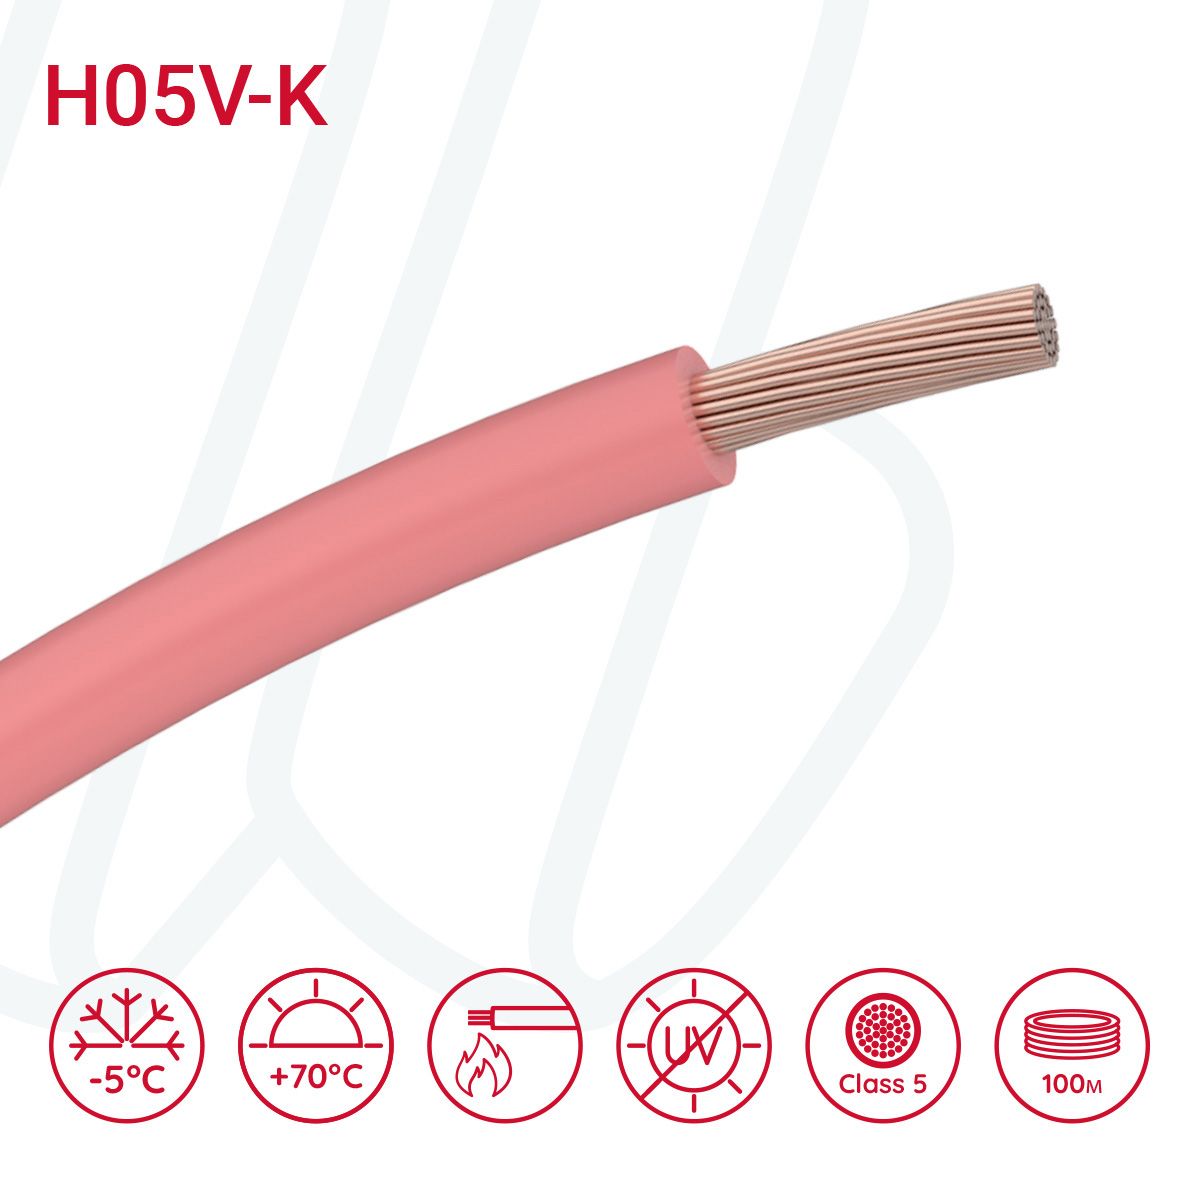 Провід монтажний гнучкий H05V-K 1 мм² рожевий, 01, 1.0